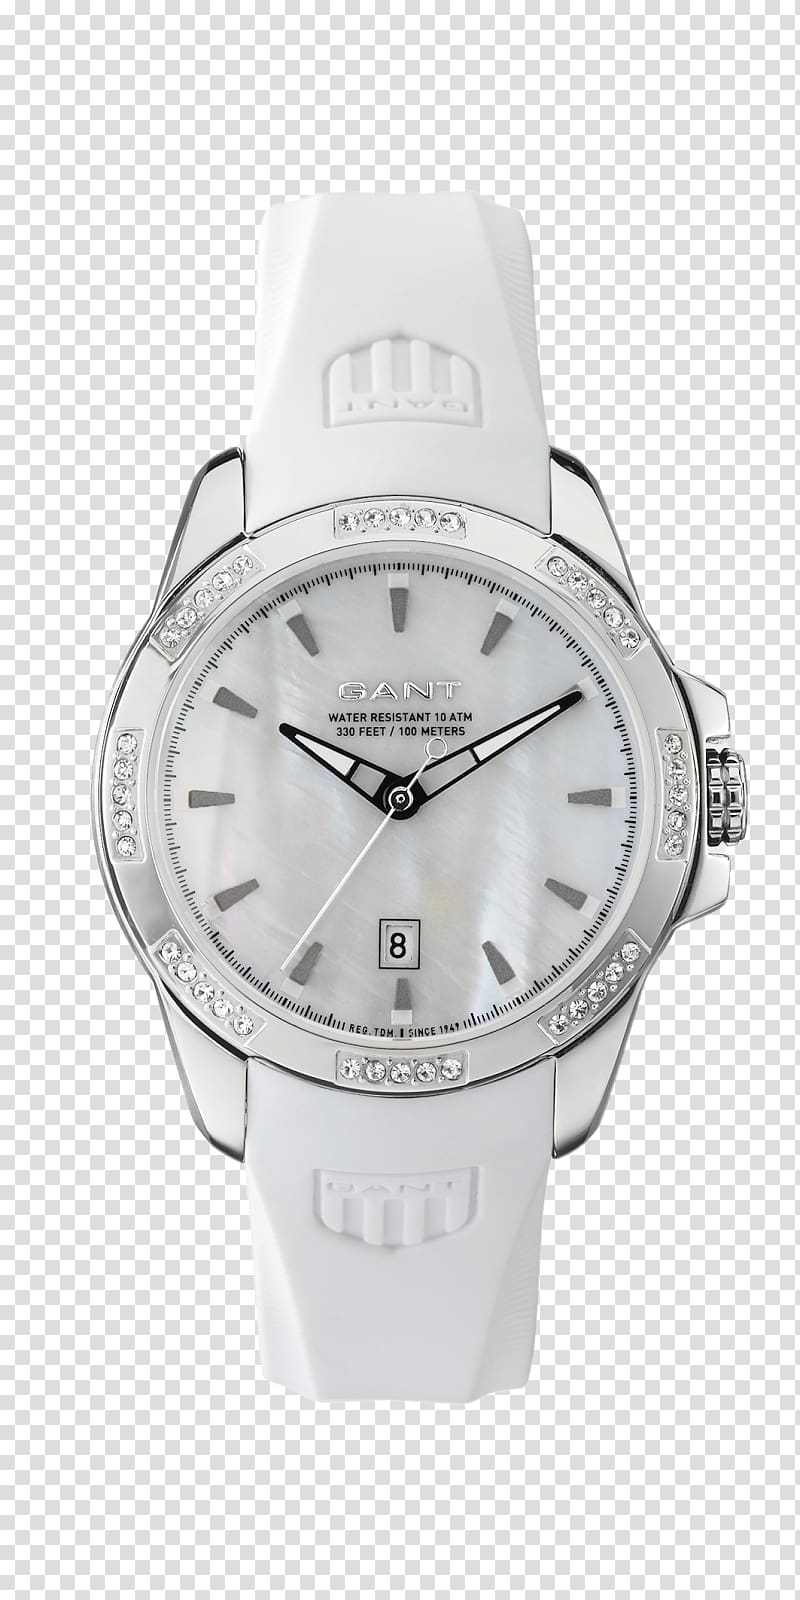 Hamilton Watch Company Gant Bracelet Tissot, watch transparent background PNG clipart